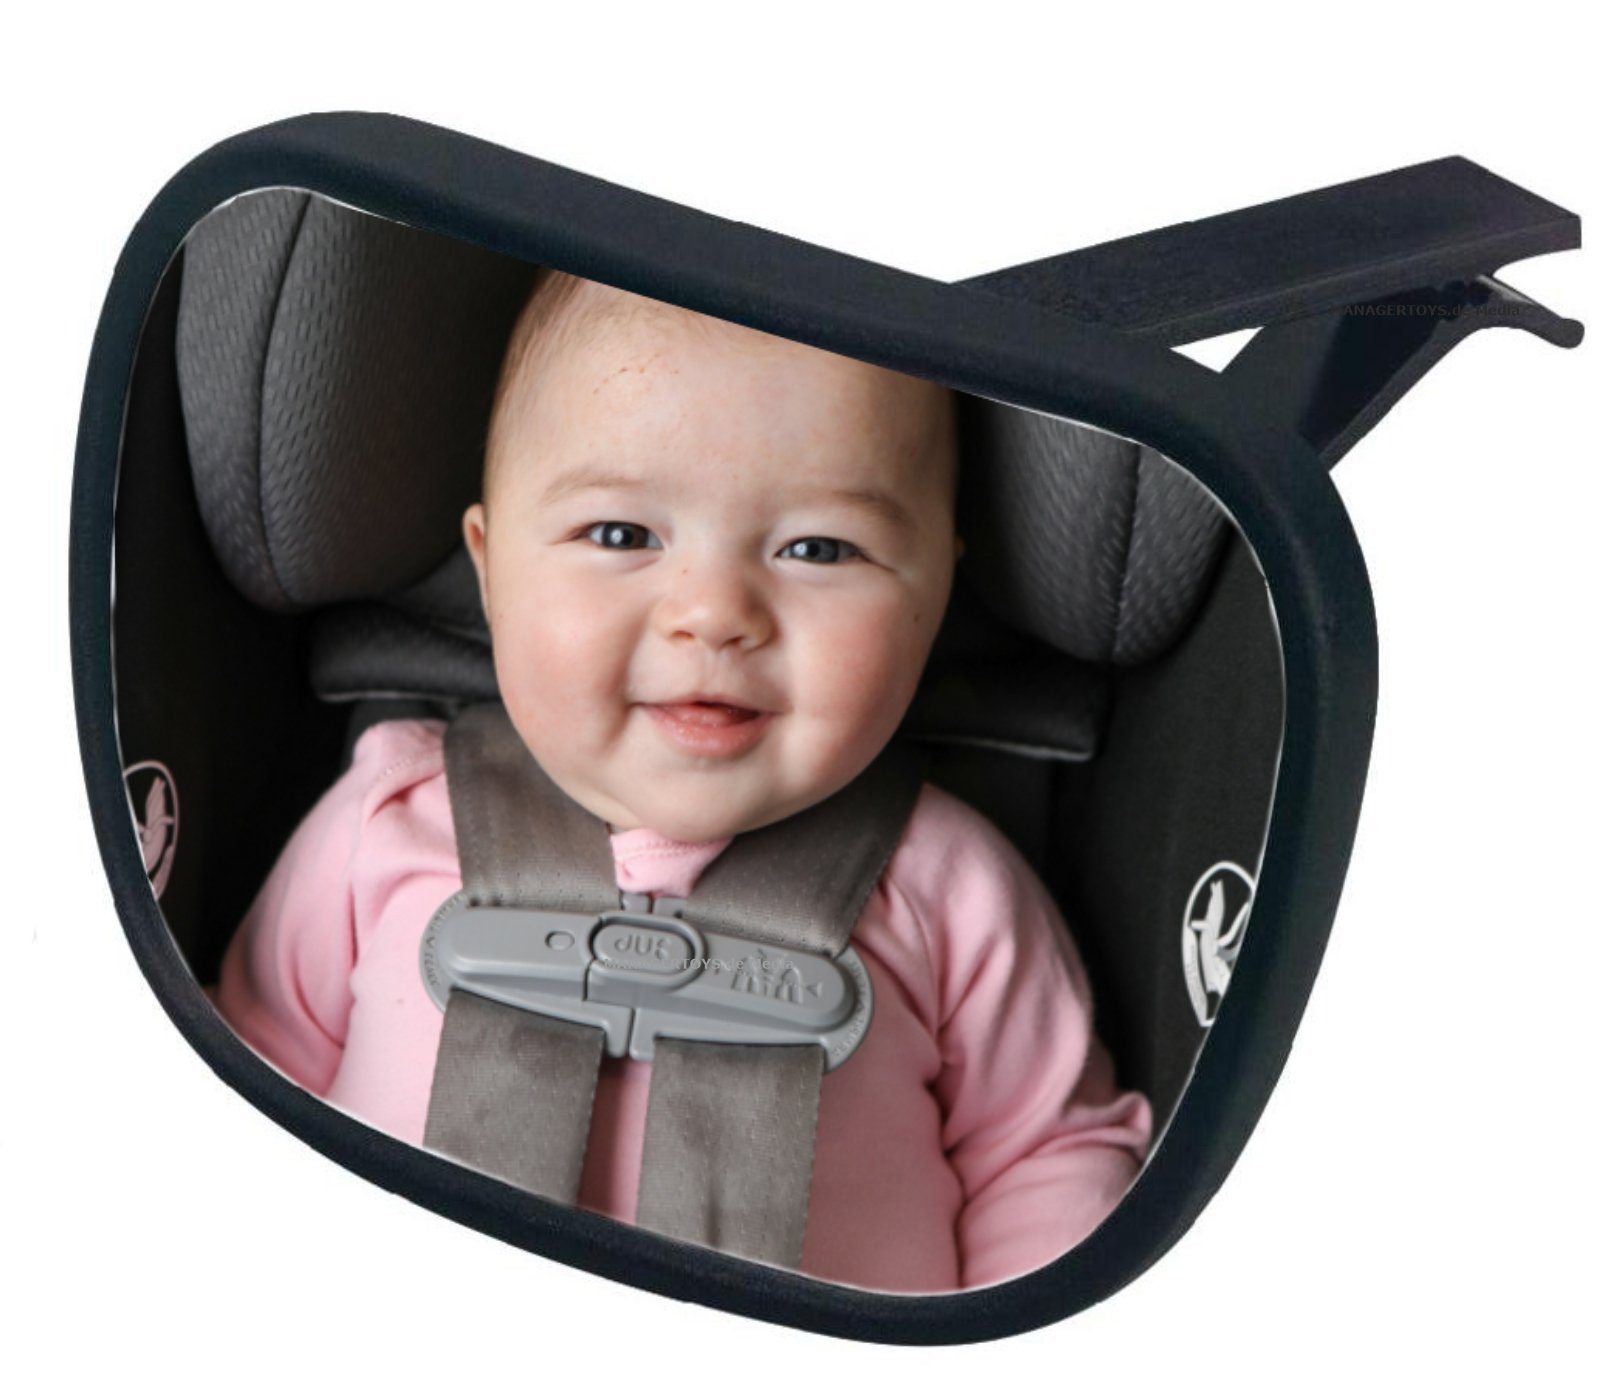 Rücksitzspiegel Baby Autospiegel, Spiegel Auto Baby Rückbank